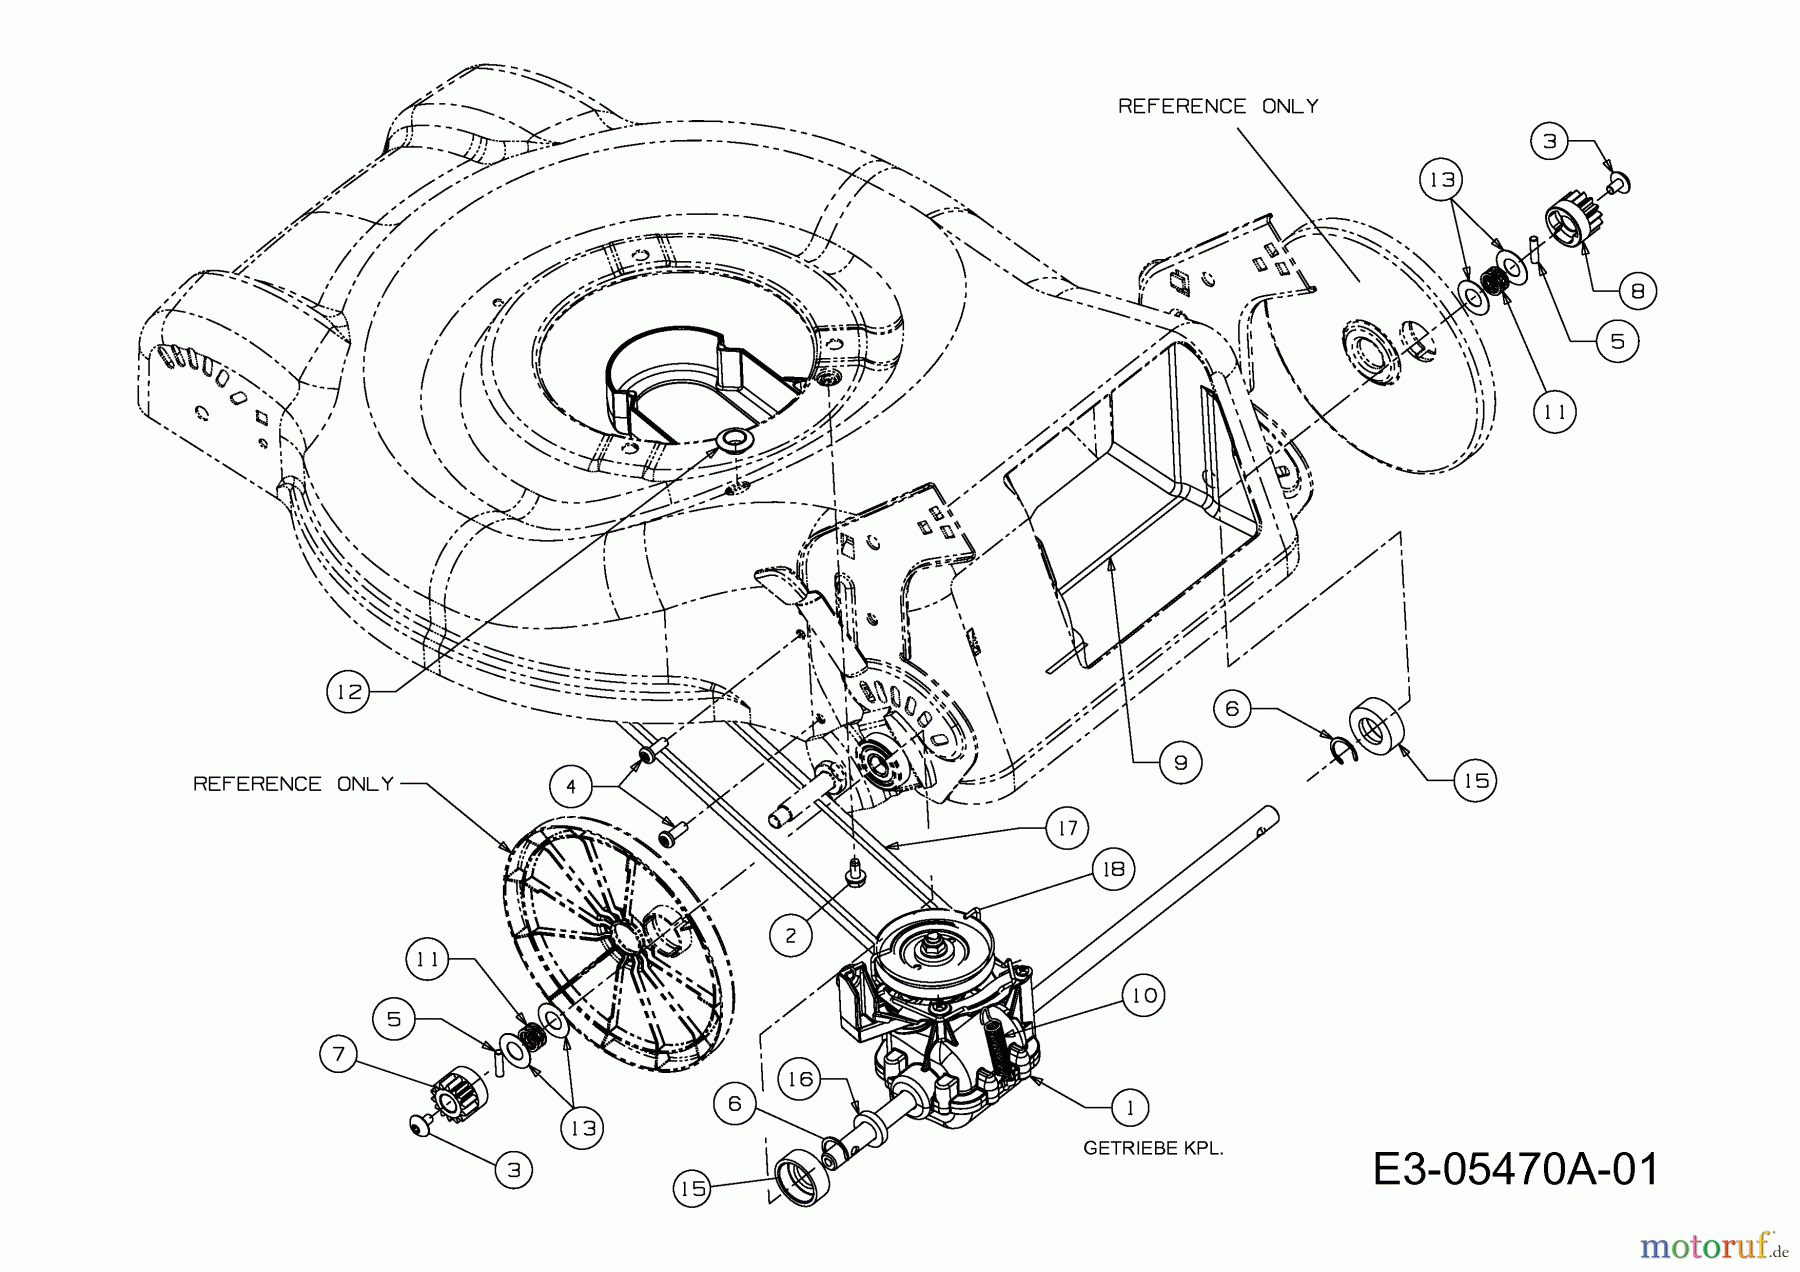  MTD Motormäher mit Antrieb 46 SPHM-HQ 12D-J2AQ616  (2010) Getriebe